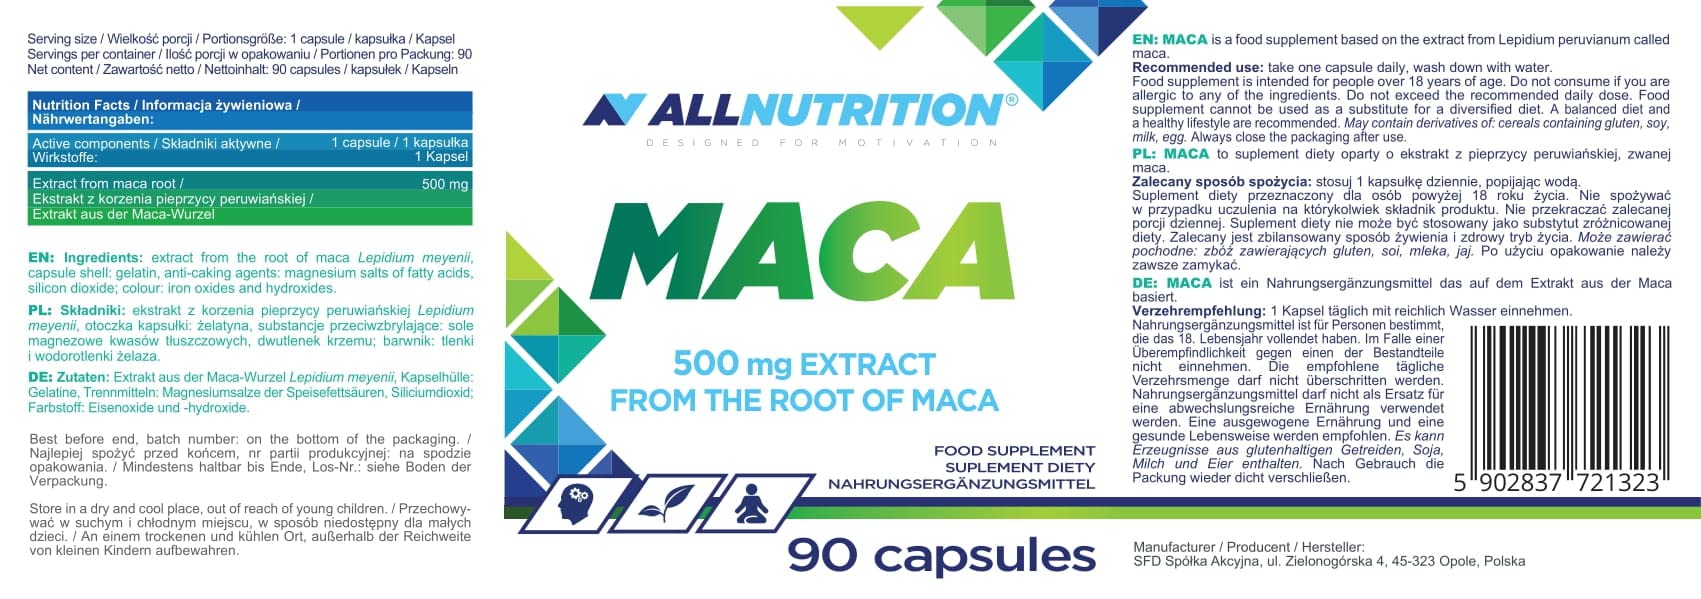 Allnutrition Maca, 500mg - 90 caps | High-Quality Vitamins, Minerals & Supplements | MySupplementShop.co.uk